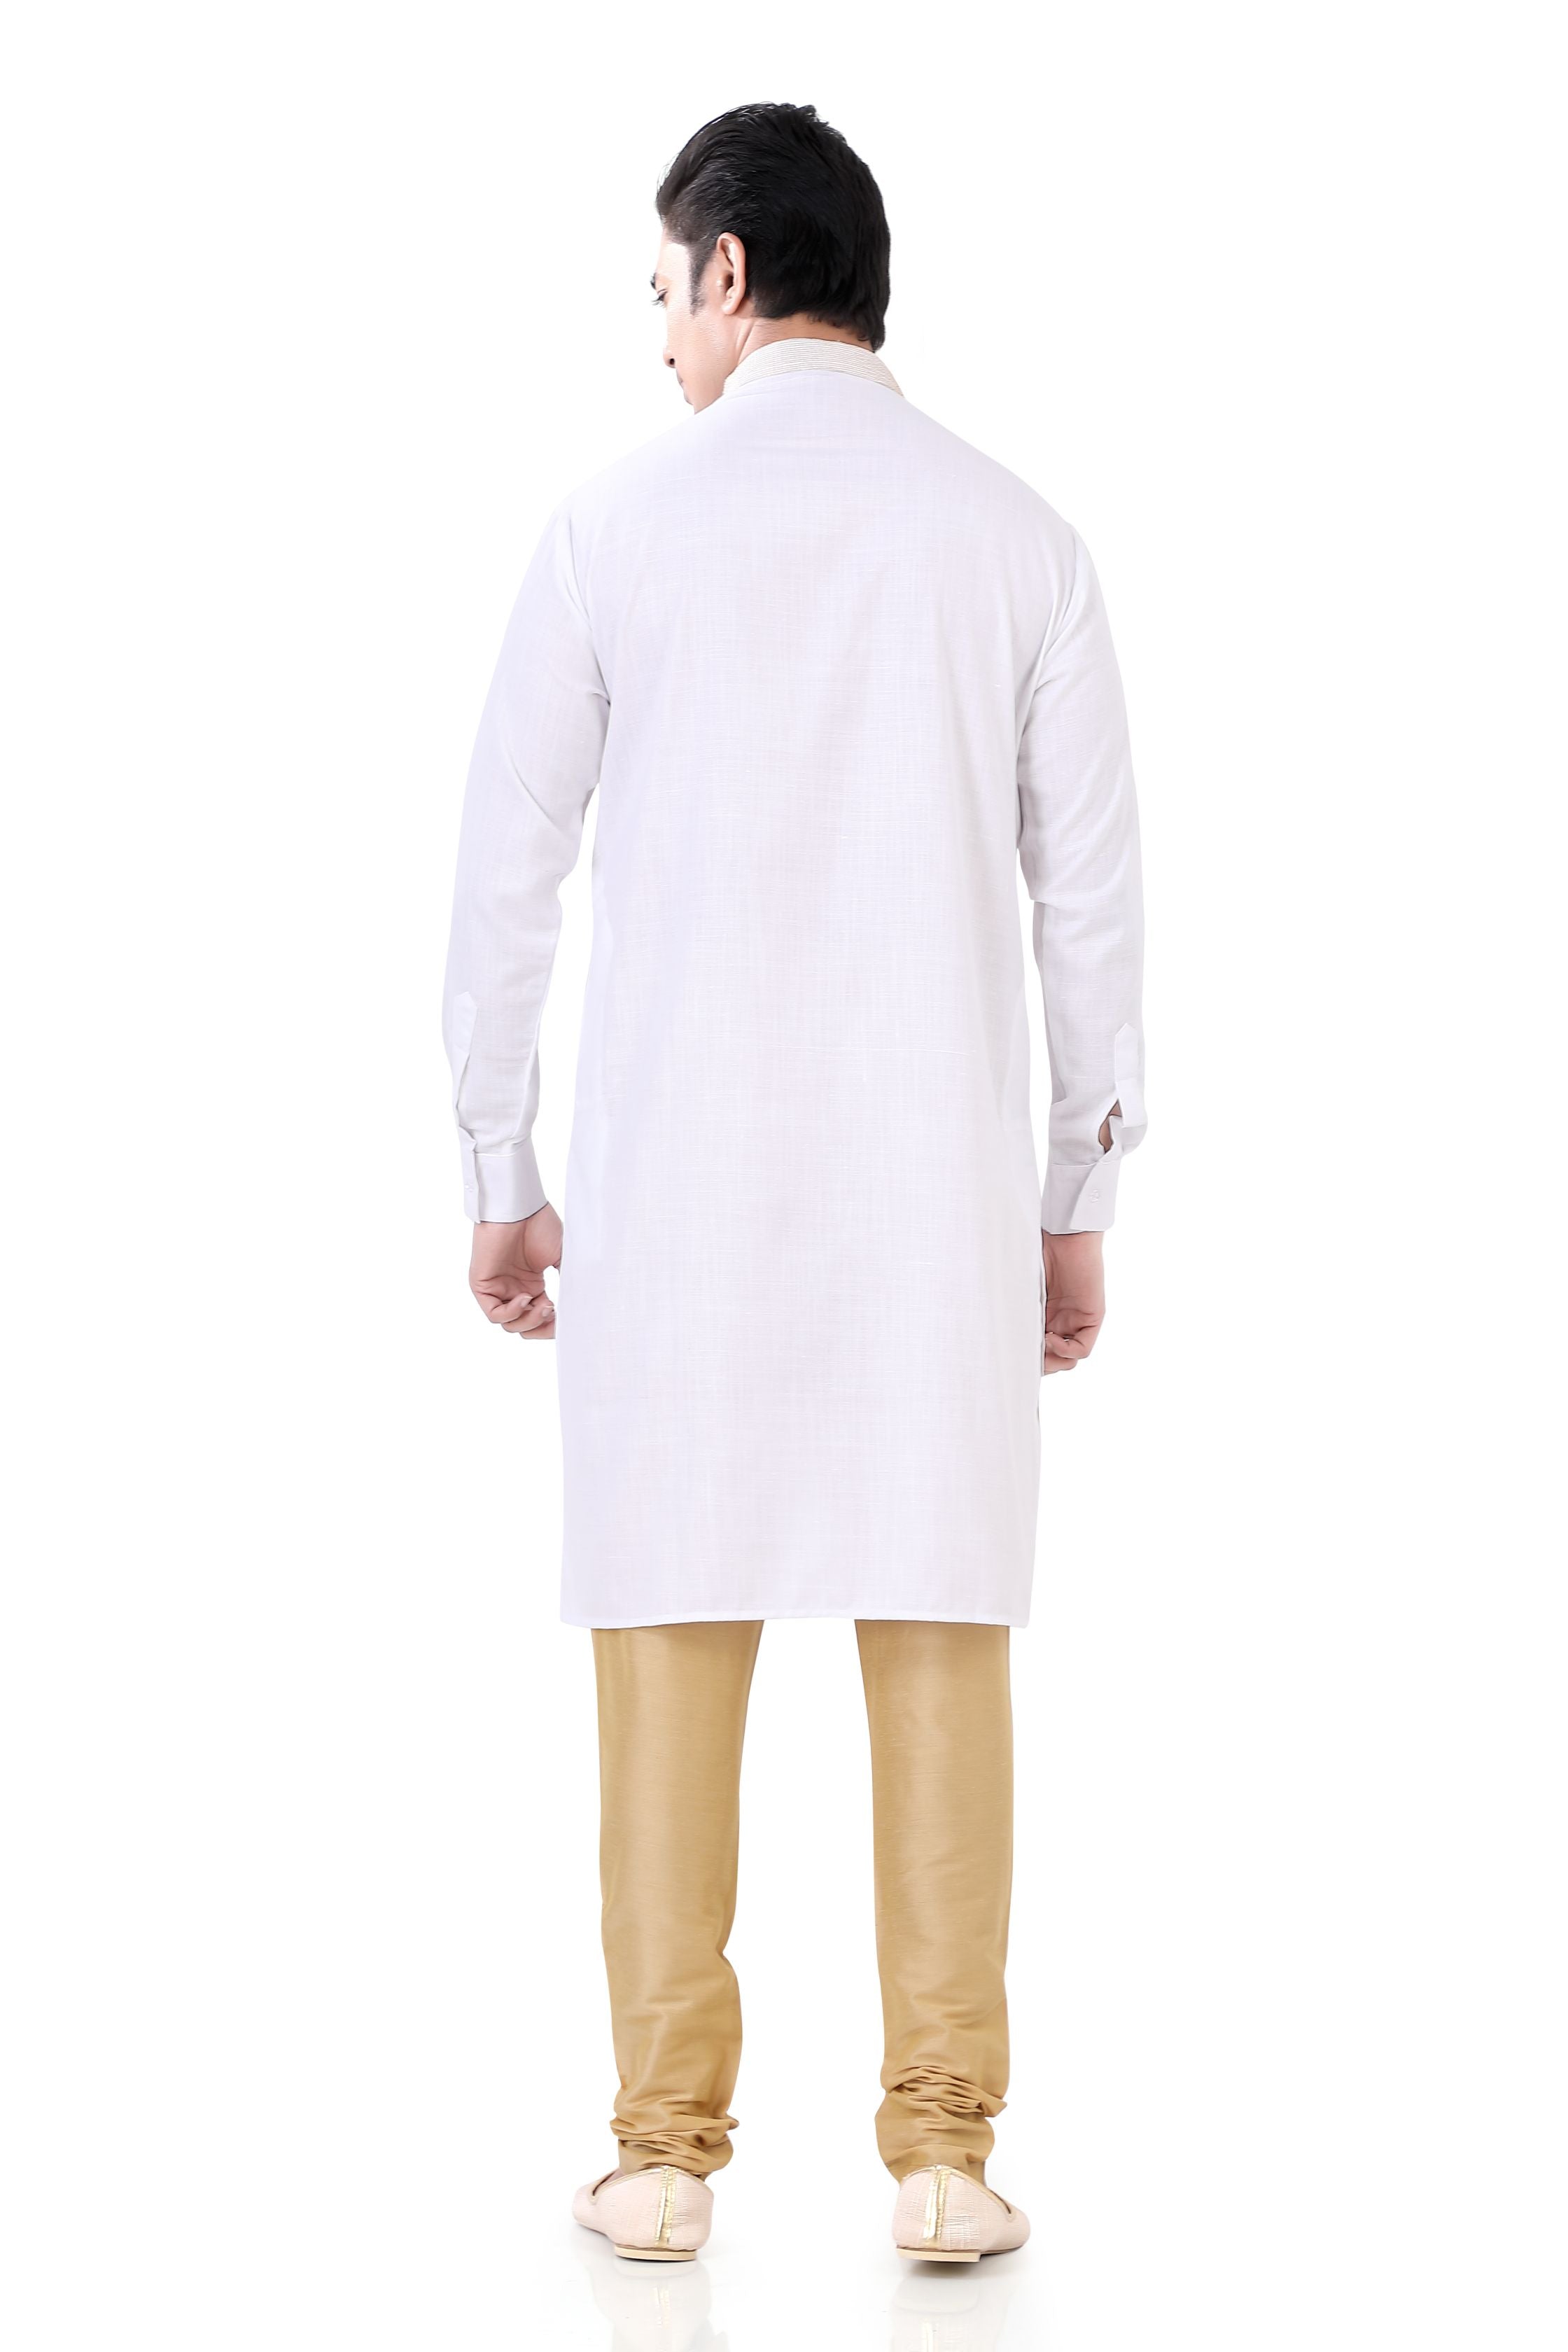 Cotton Anchor embroidery Kurta Pajama in White Colour